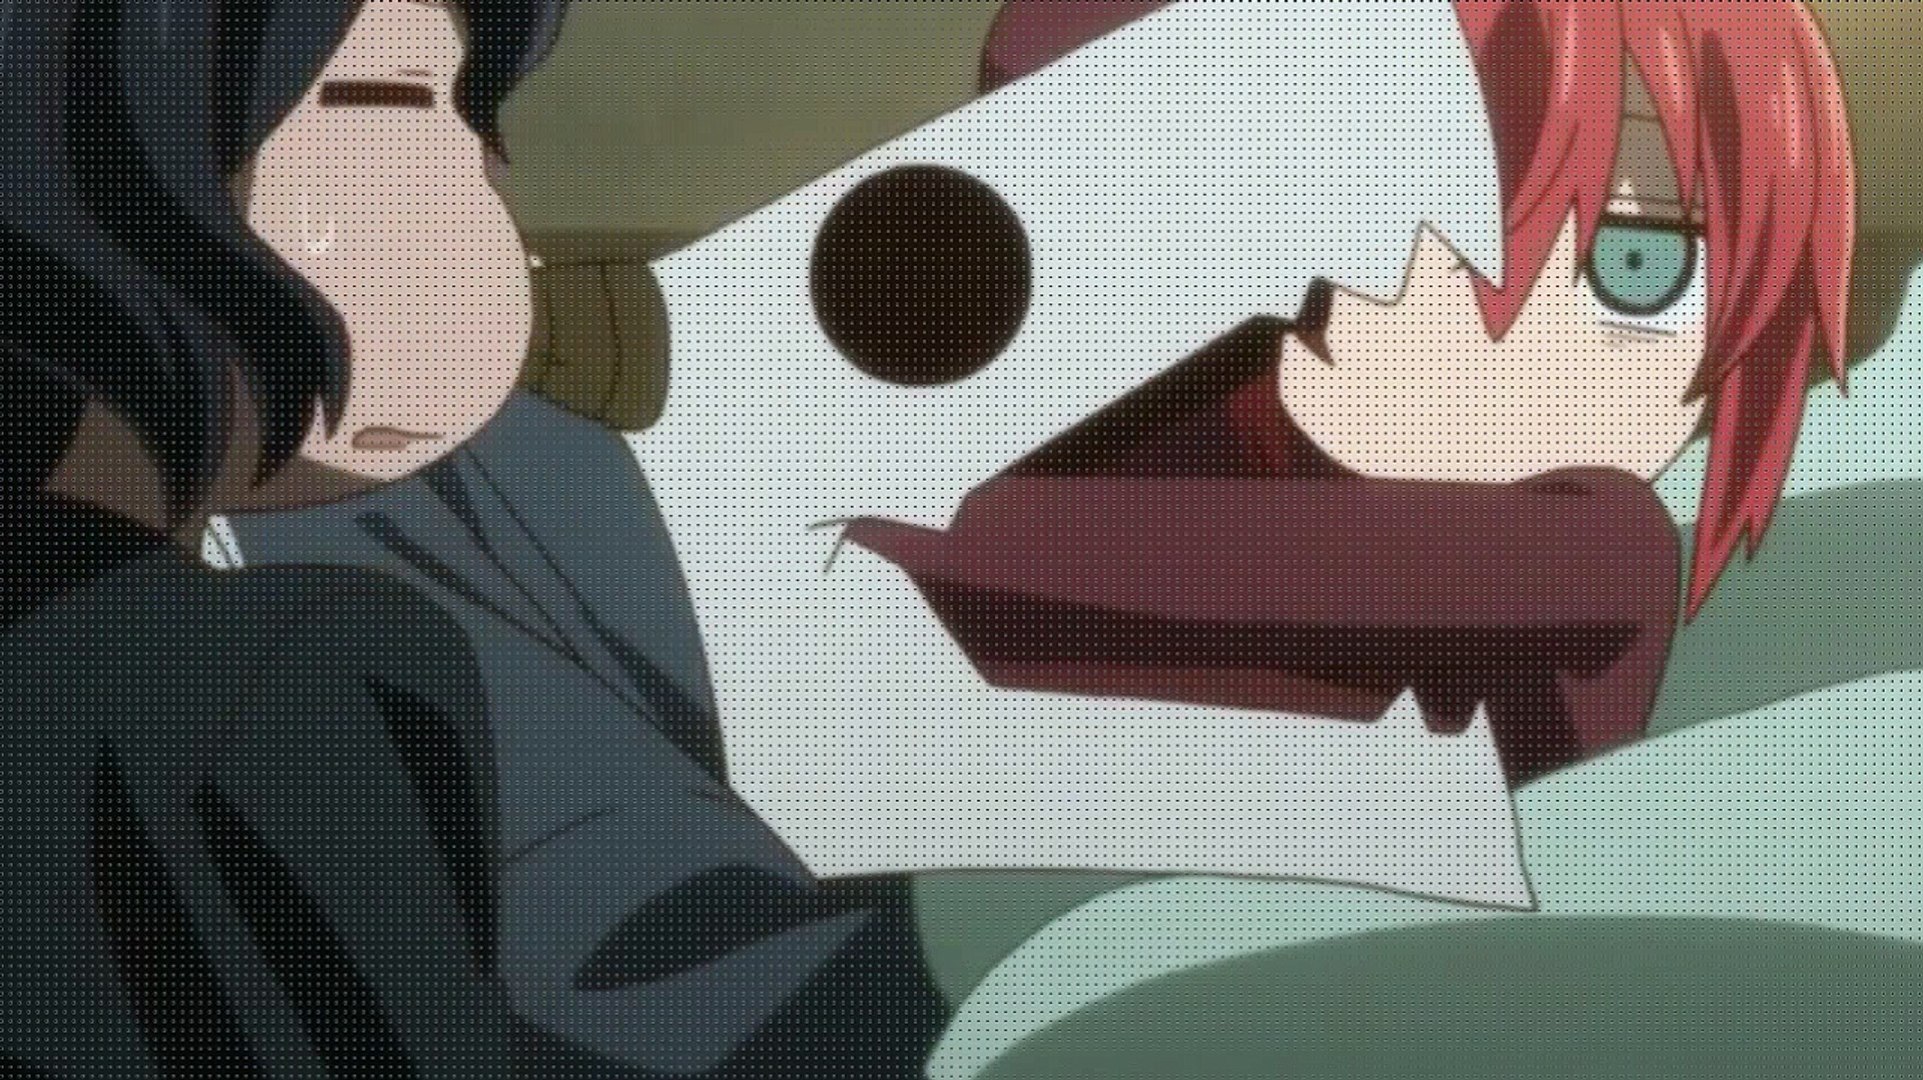 Café com Anime - Mahoutsukai no Yome Episódio 18